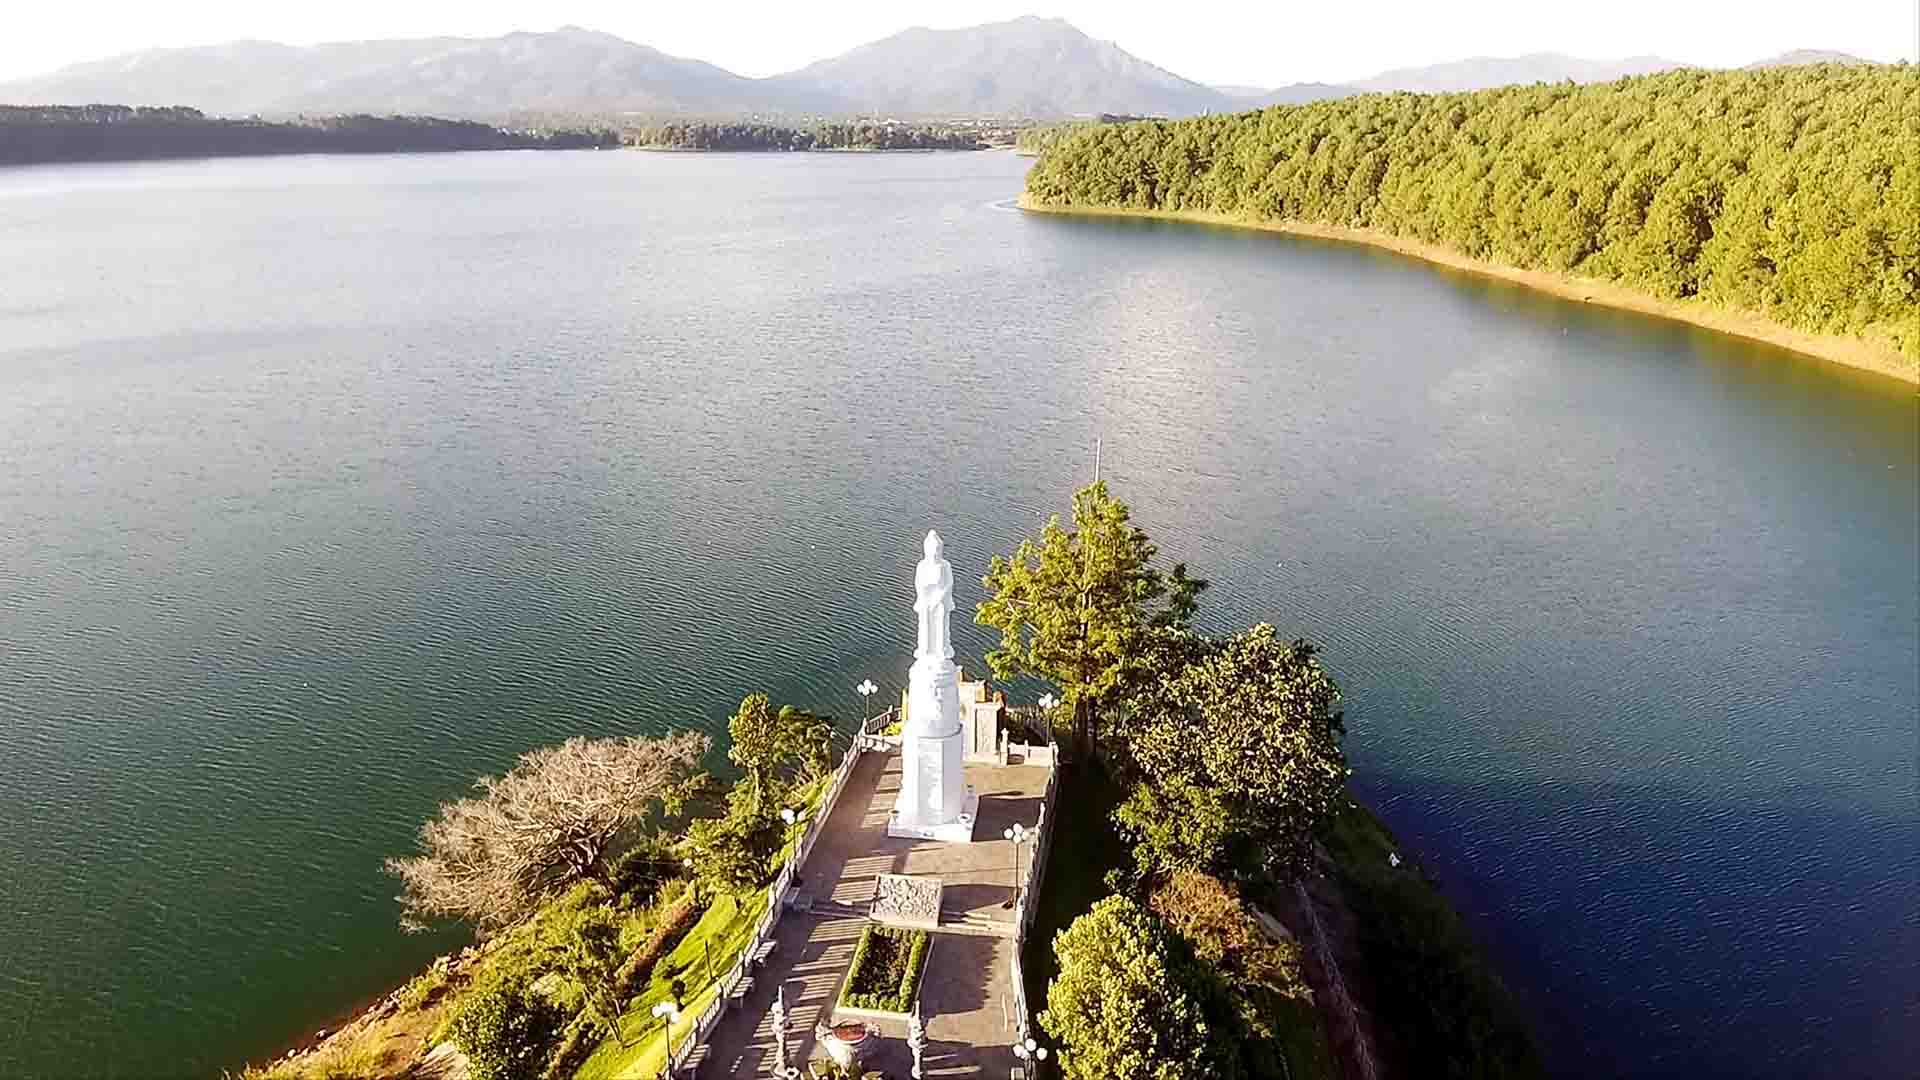 Cảnh đẹp biển hồ Pleiku tại Gia Lai nhìn trên cao Flycam - Tượng Phật biển Hồ Pleiku 